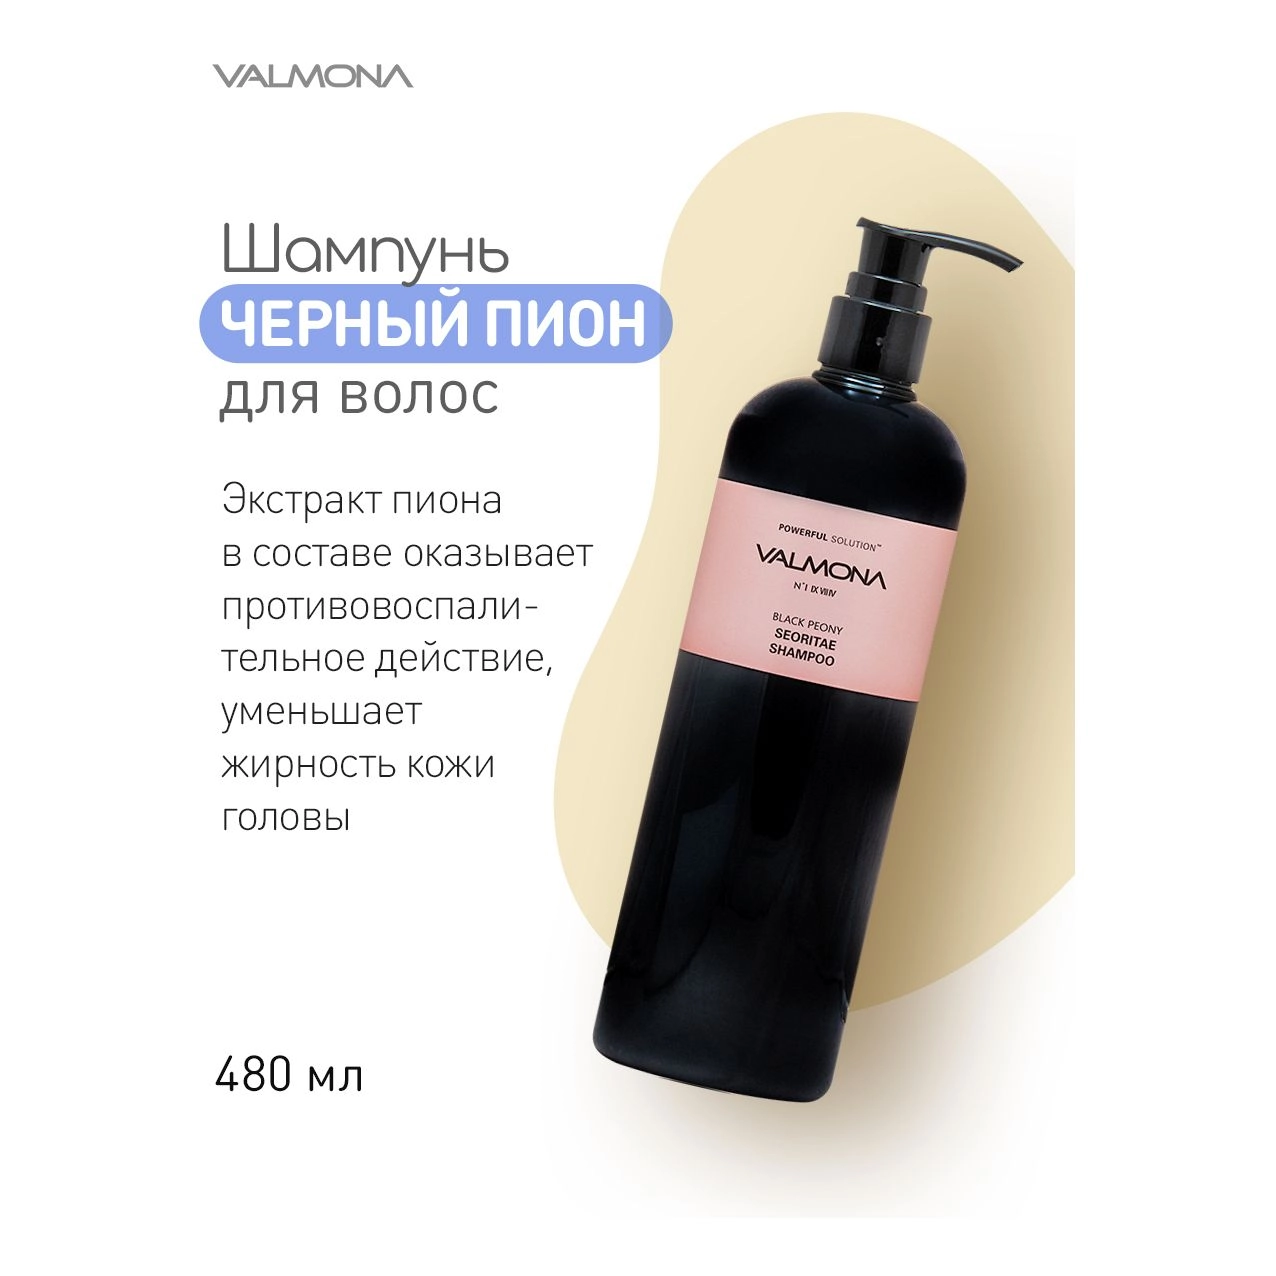 Шампунь для волос с эктрактом черных бобов и пионом - Valmona Powerful Solution Black Peony Seoritae Shampoo, 480 мл - фото N3